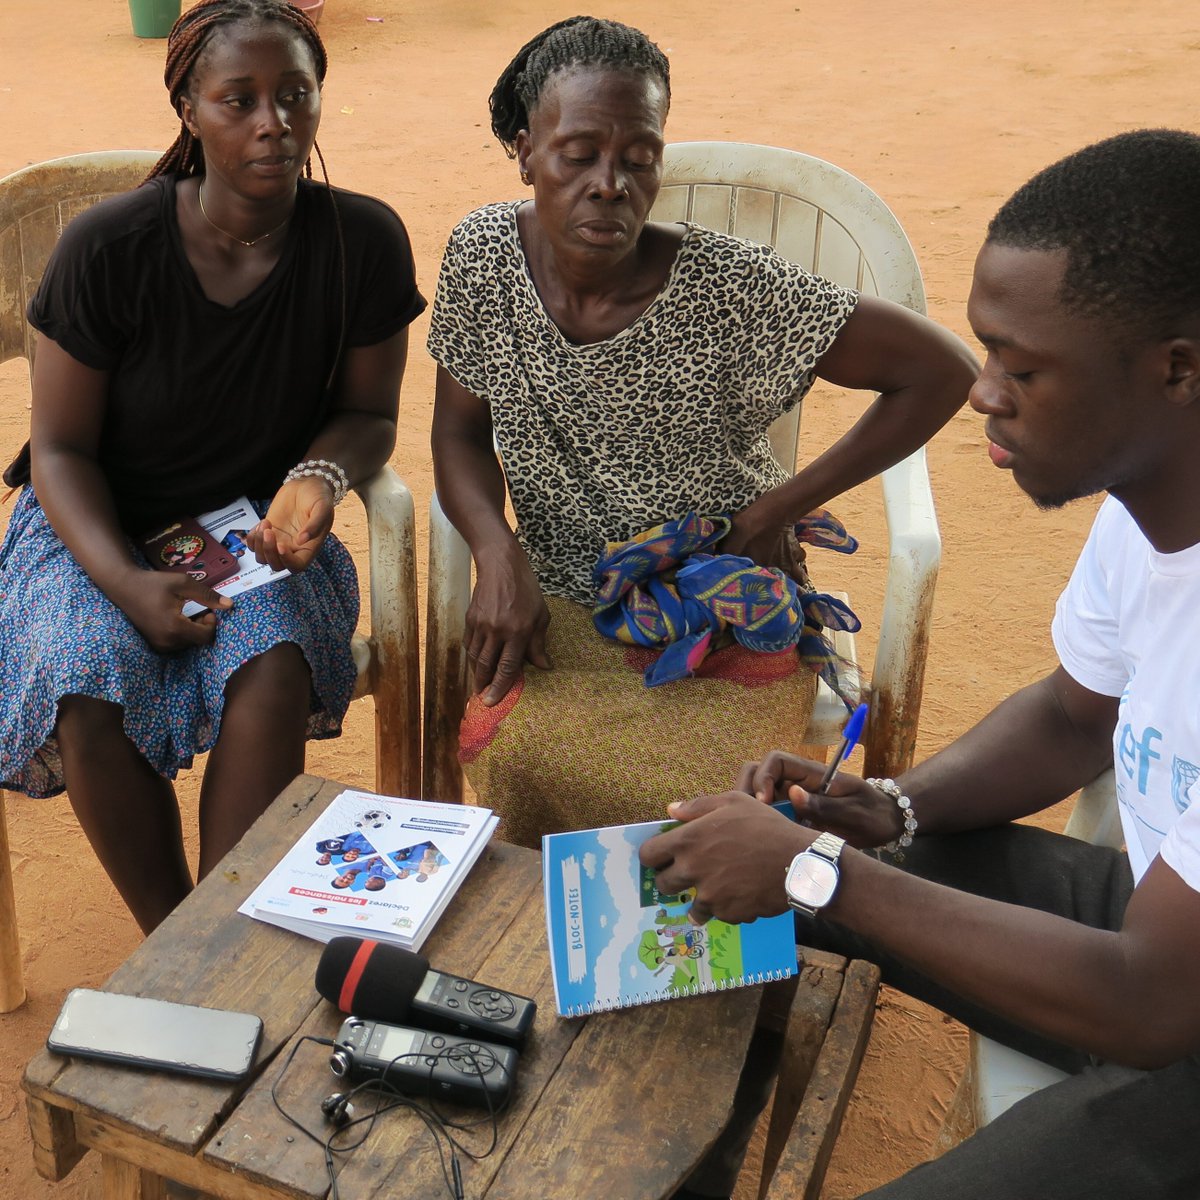 En Côte d’Ivoire, 2 millions d’enfants de moins de 5 ans n’ont pas d’acte de naissance et Jacques, 23 ans, veut changer cela. Dans son village natal, il sensibilise à l'importance de l'enregistrement des naissances pour que tous les enfants puissent avoir une identité légale.